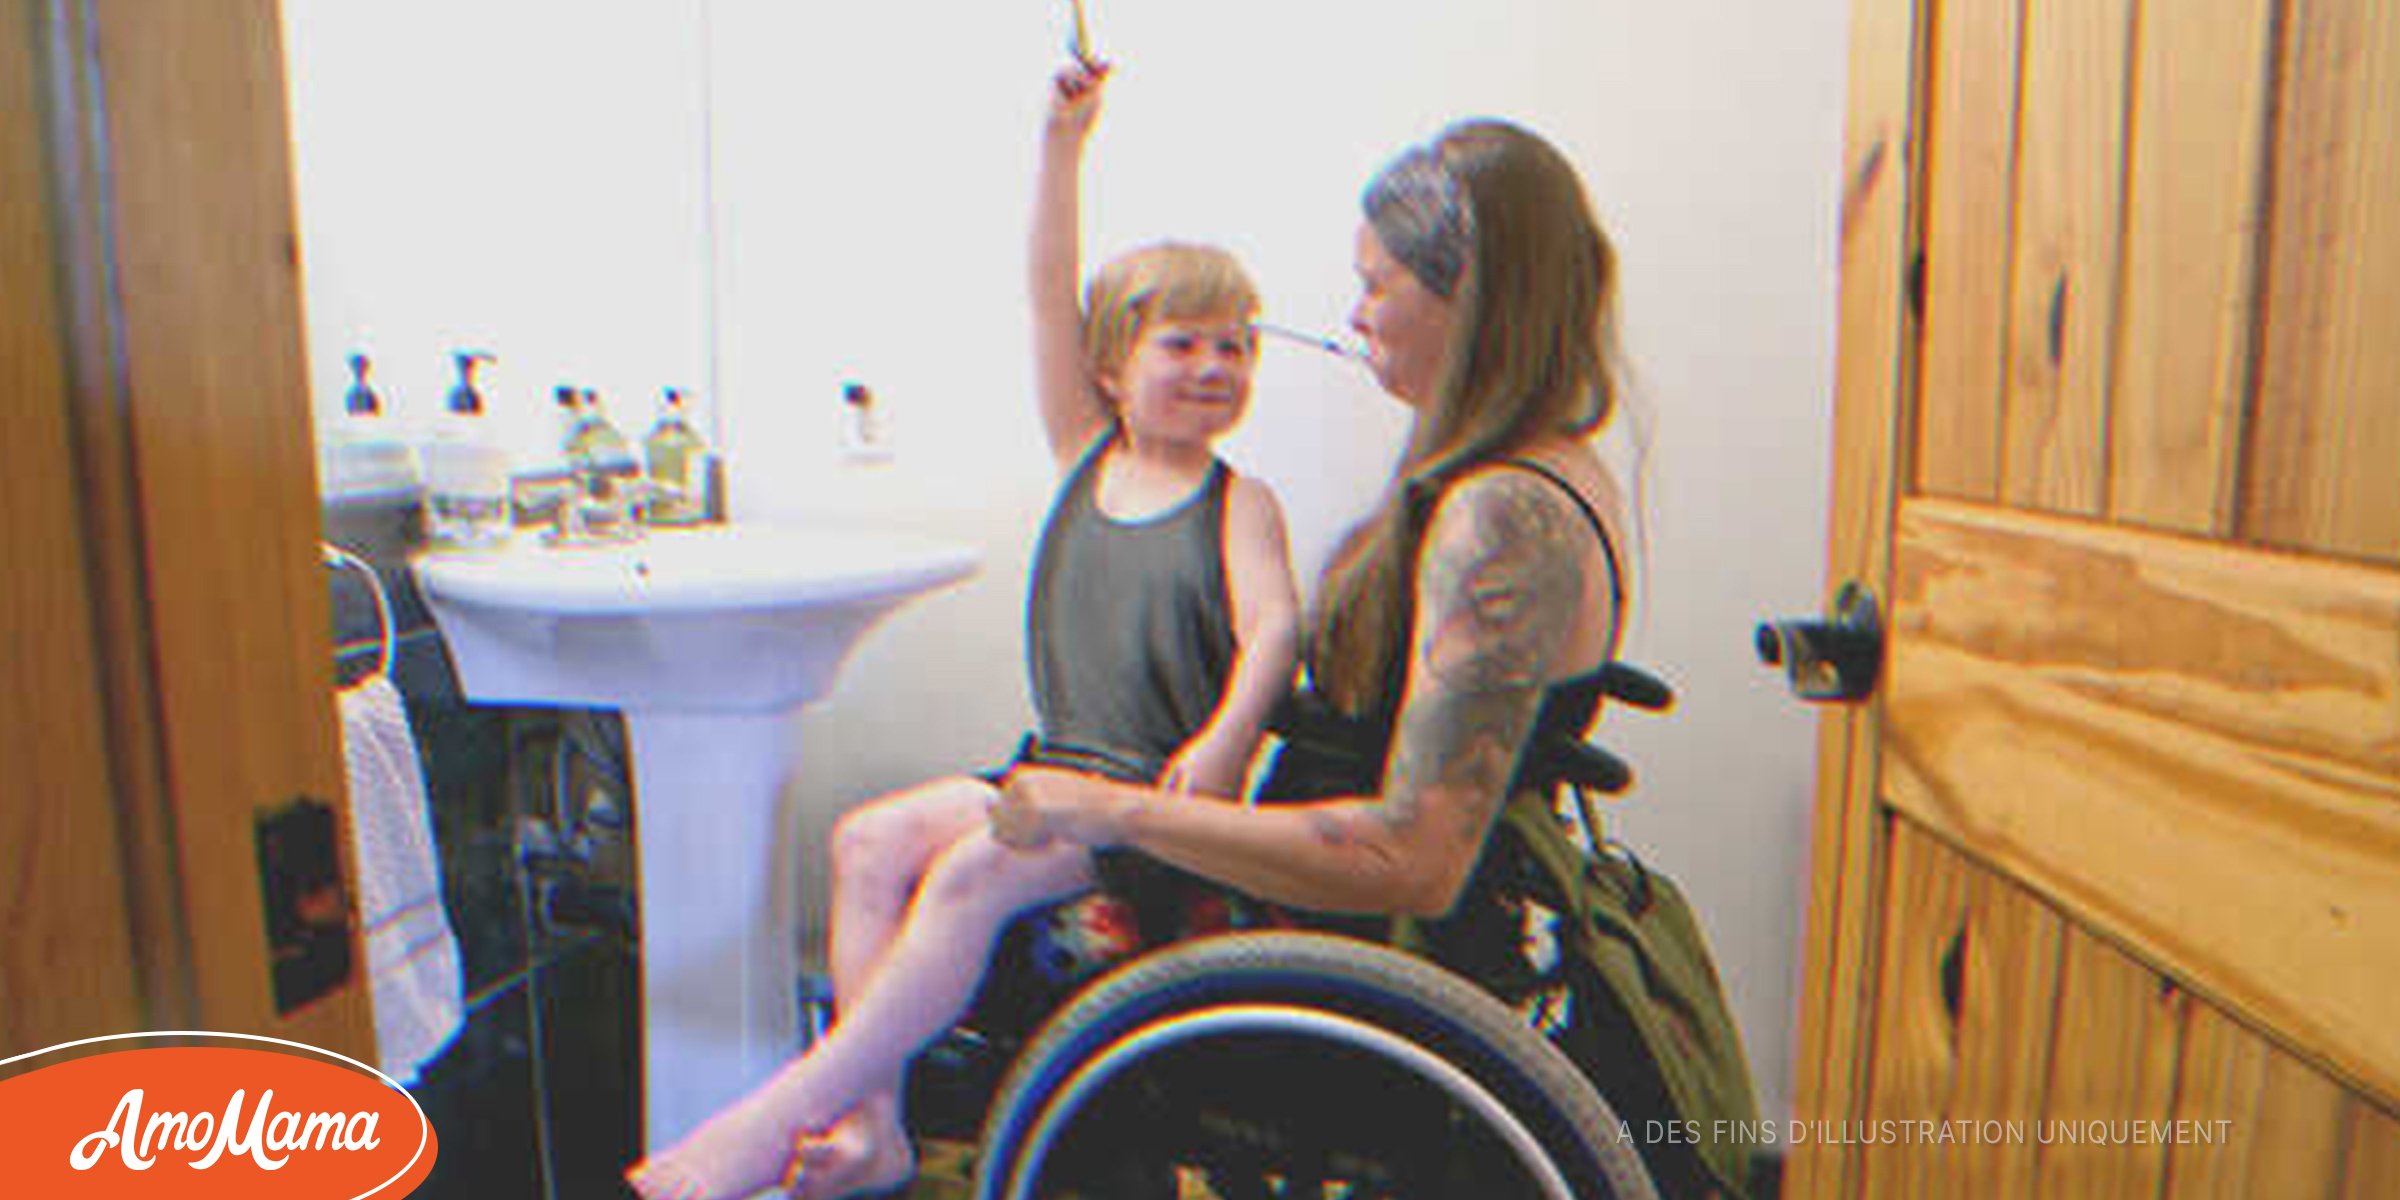 Une femme en fauteuil roulant adopte un garçon et lui offre une vie extraordinaire, en retour, il l’aide à remarcher – Histoire du jour